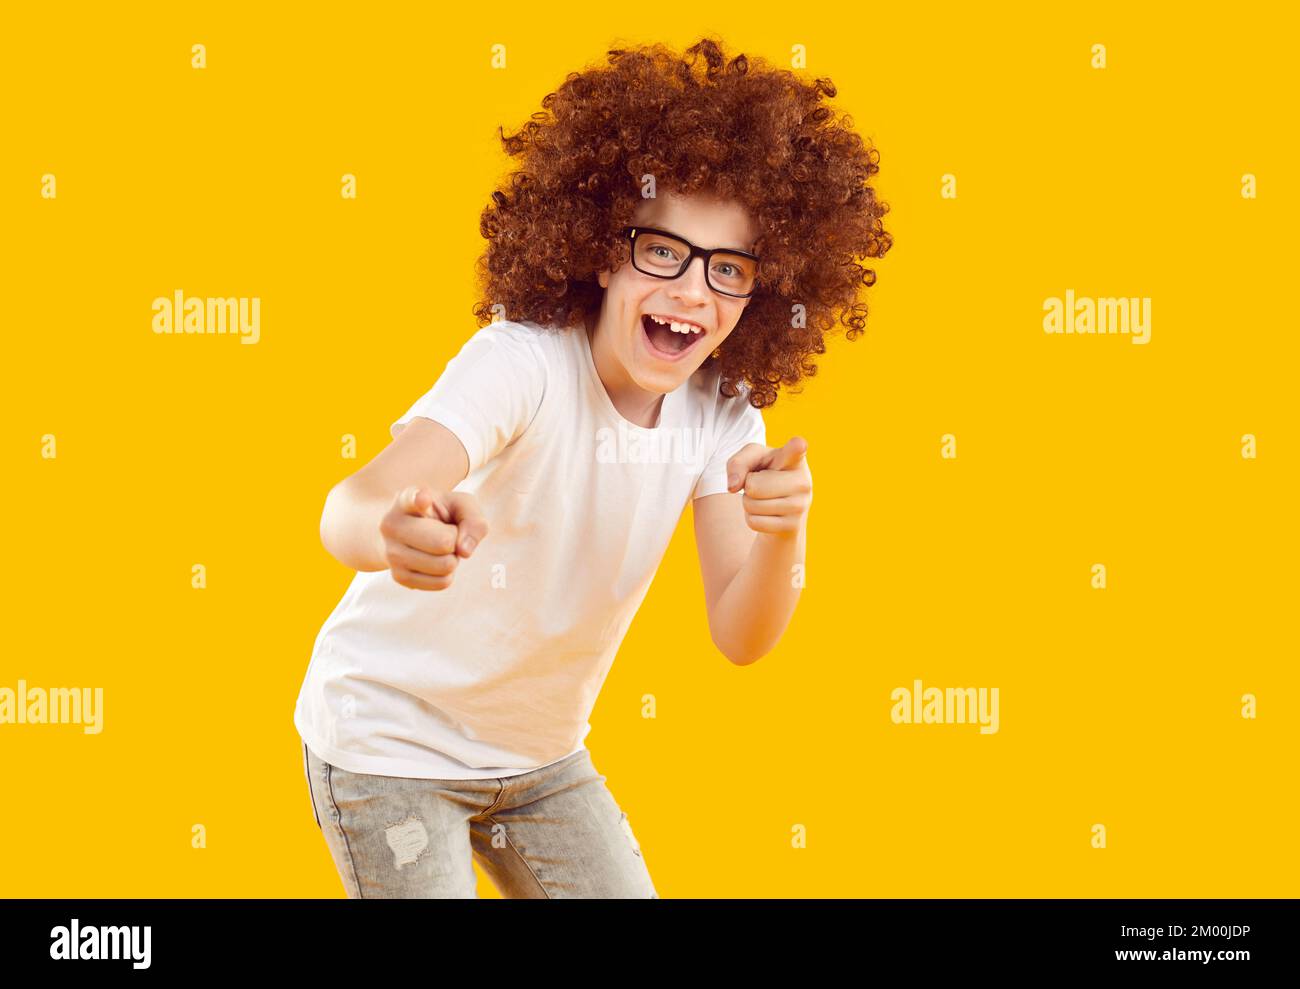 Ragazzo felice vestito in una T-shirt bianca e jeans grigi su sfondo giallo-arancione in studio. Foto Stock